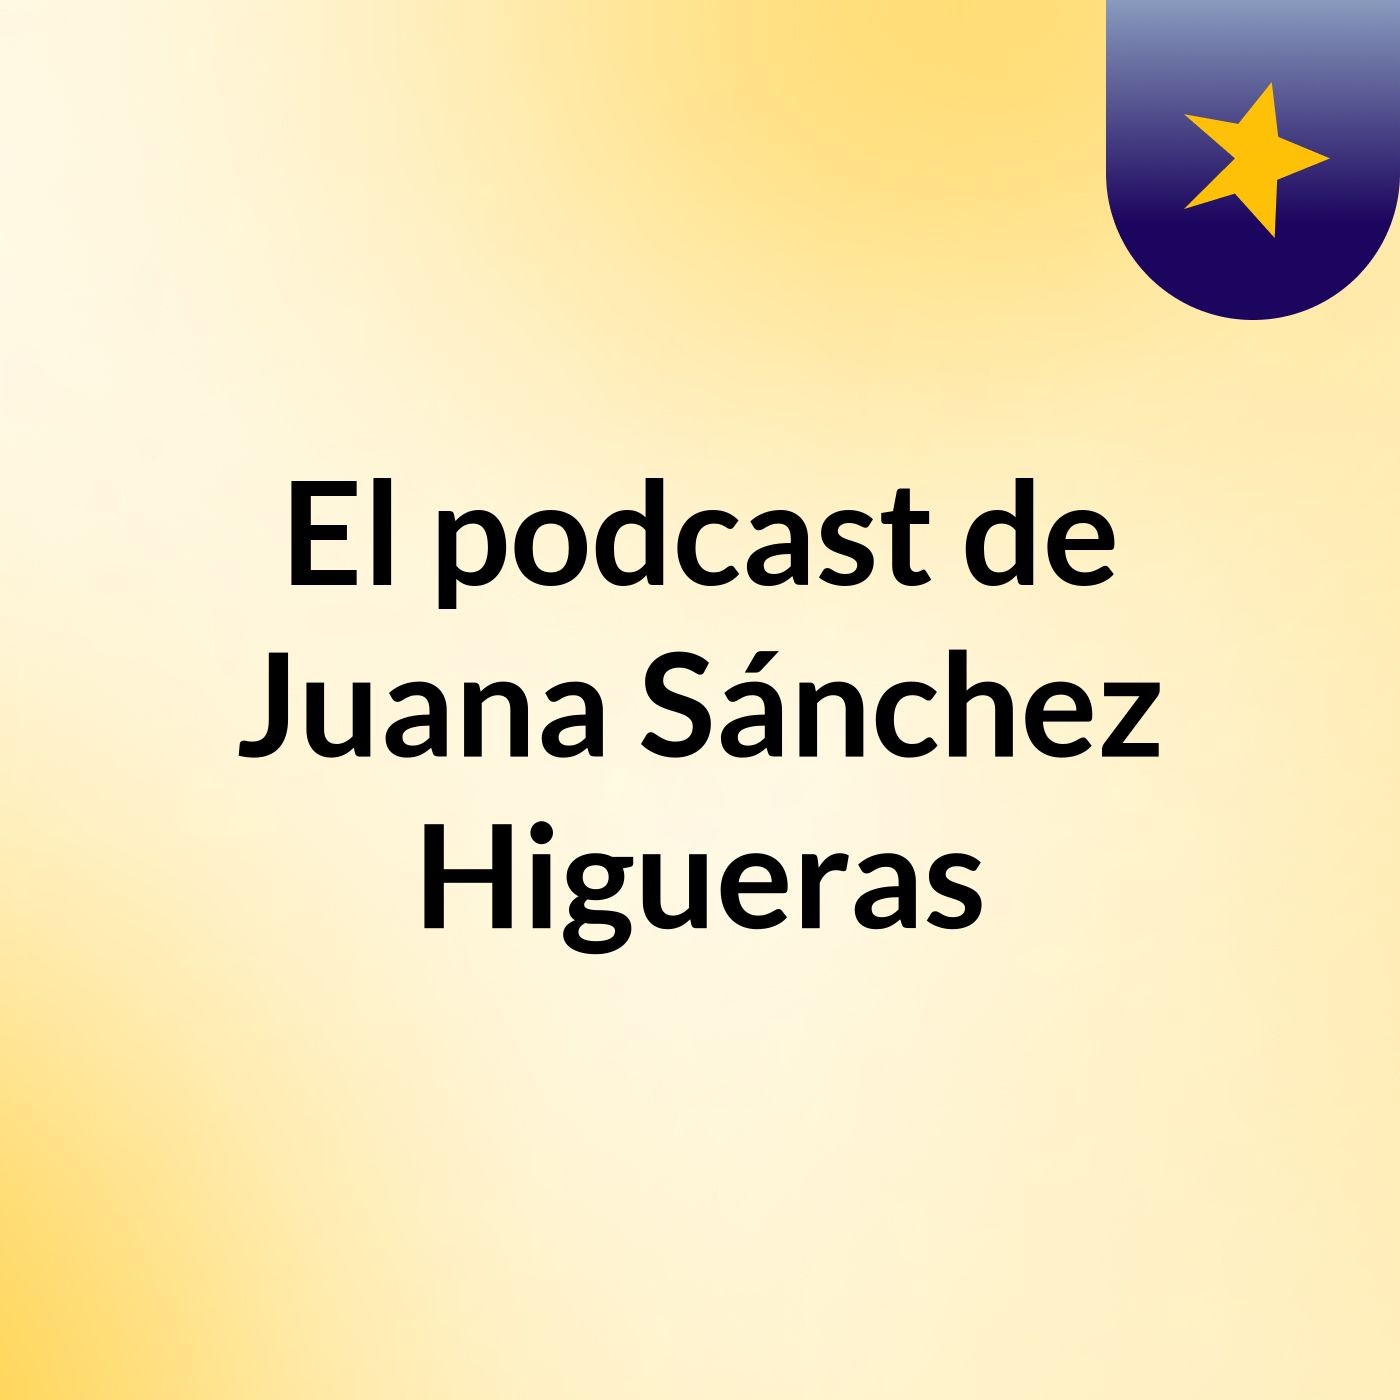 El podcast de Juana Sánchez Higueras